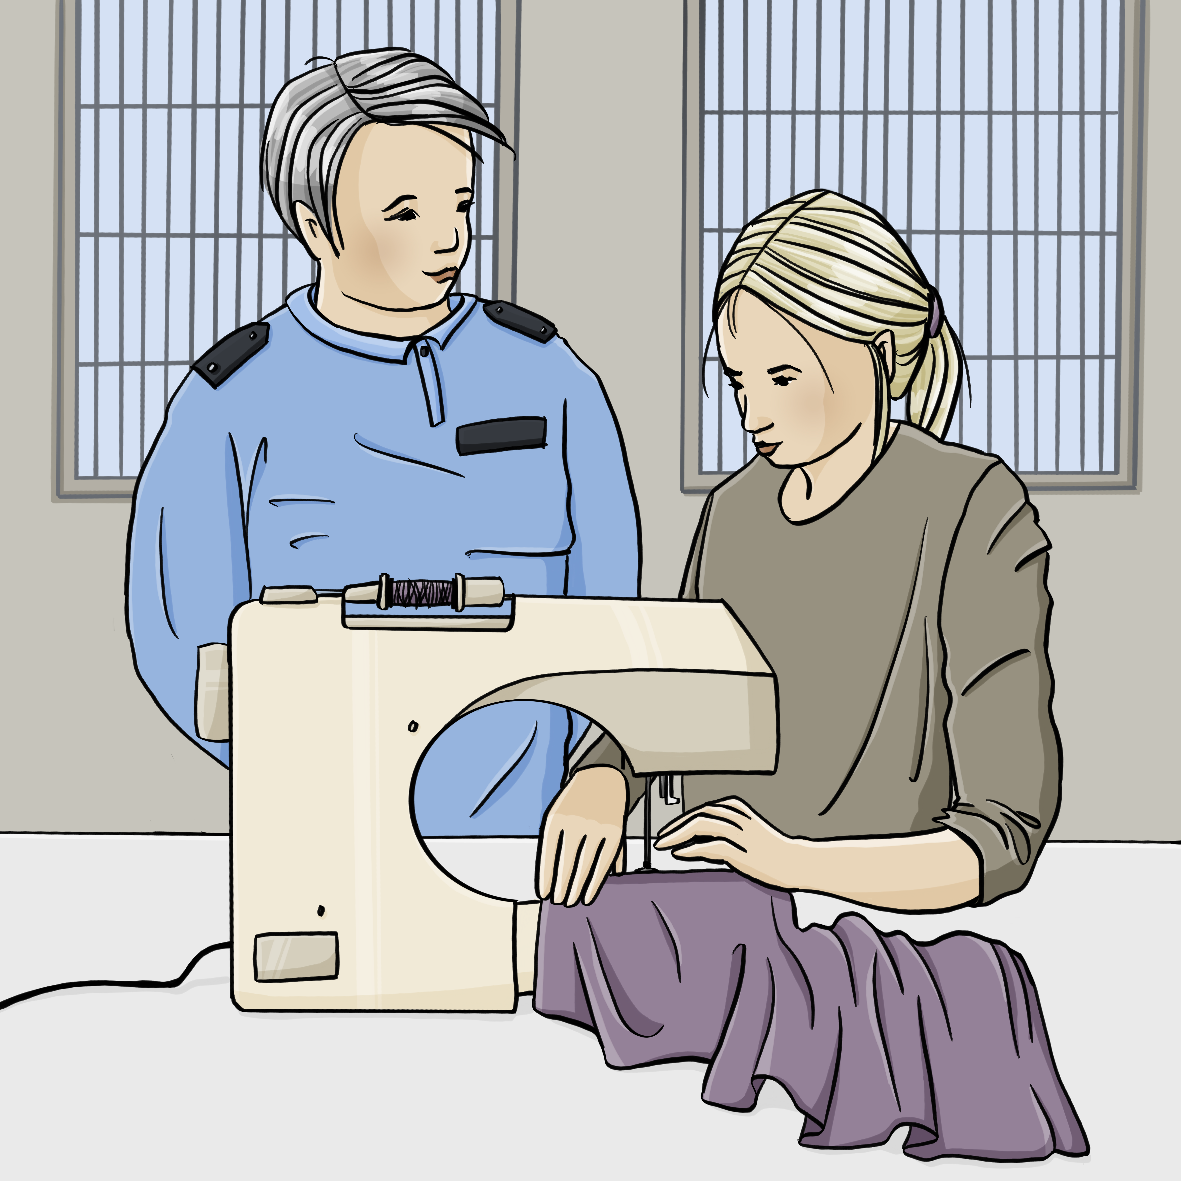 Eine Frau in grauer Kleidung sitzt an einer Nähmaschine. Neben ihr steht eine Frau in blauer Uniform. Im Hintergrund sind vergitterte Fenster.